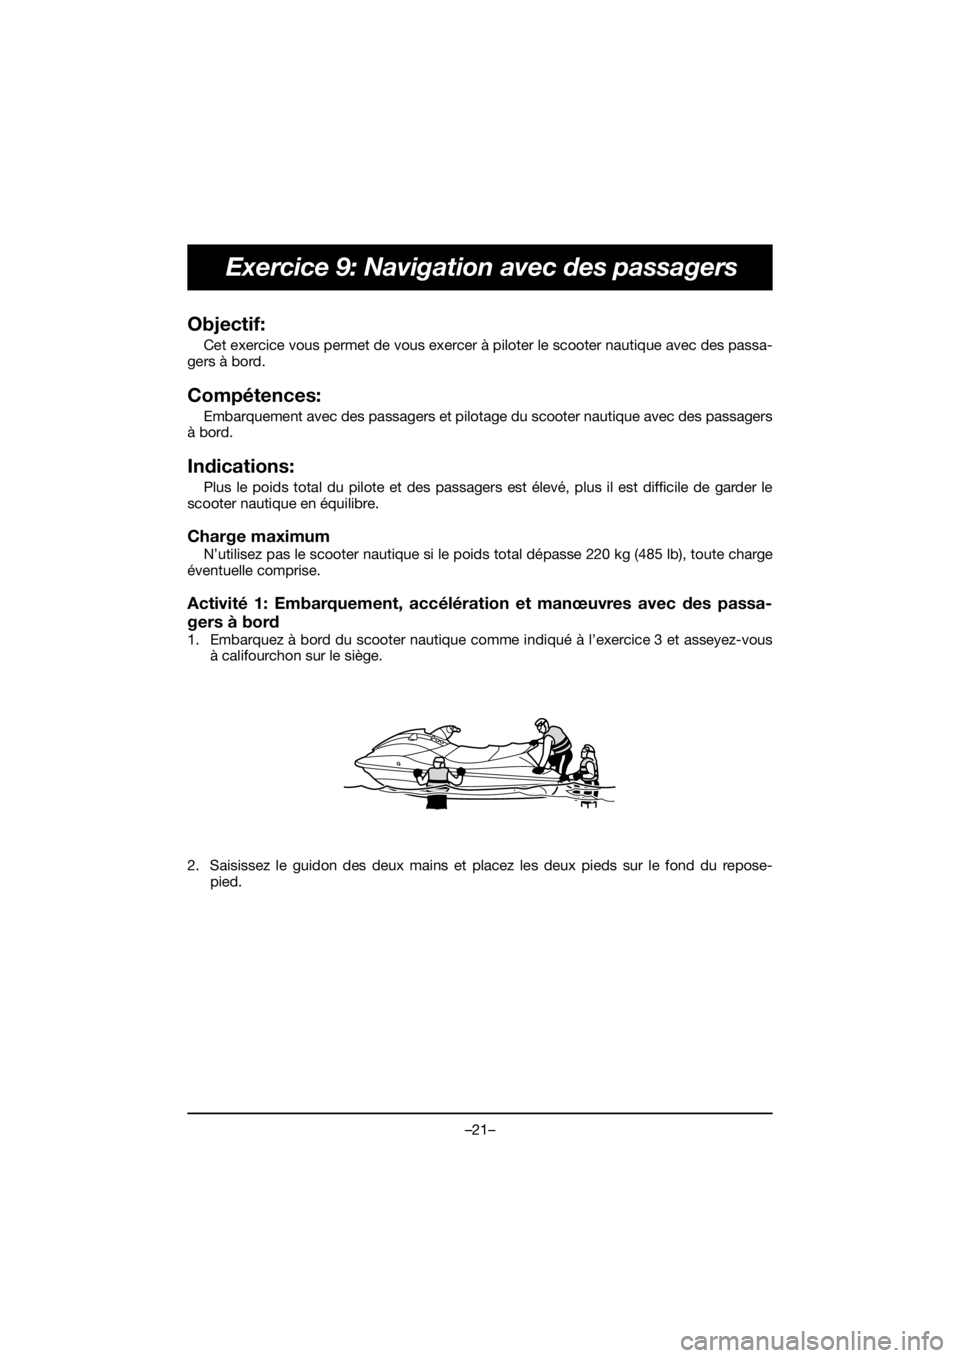 YAMAHA EX DELUXE 2020  Manuale de Empleo (in Spanish) –21–
Exercice 9: Navigation avec des passagers
Objectif: 
Cet exercice vous permet de vous exercer à piloter le scooter nautique avec des passa-
gers à bord.
Compétences: 
Embarquement avec des